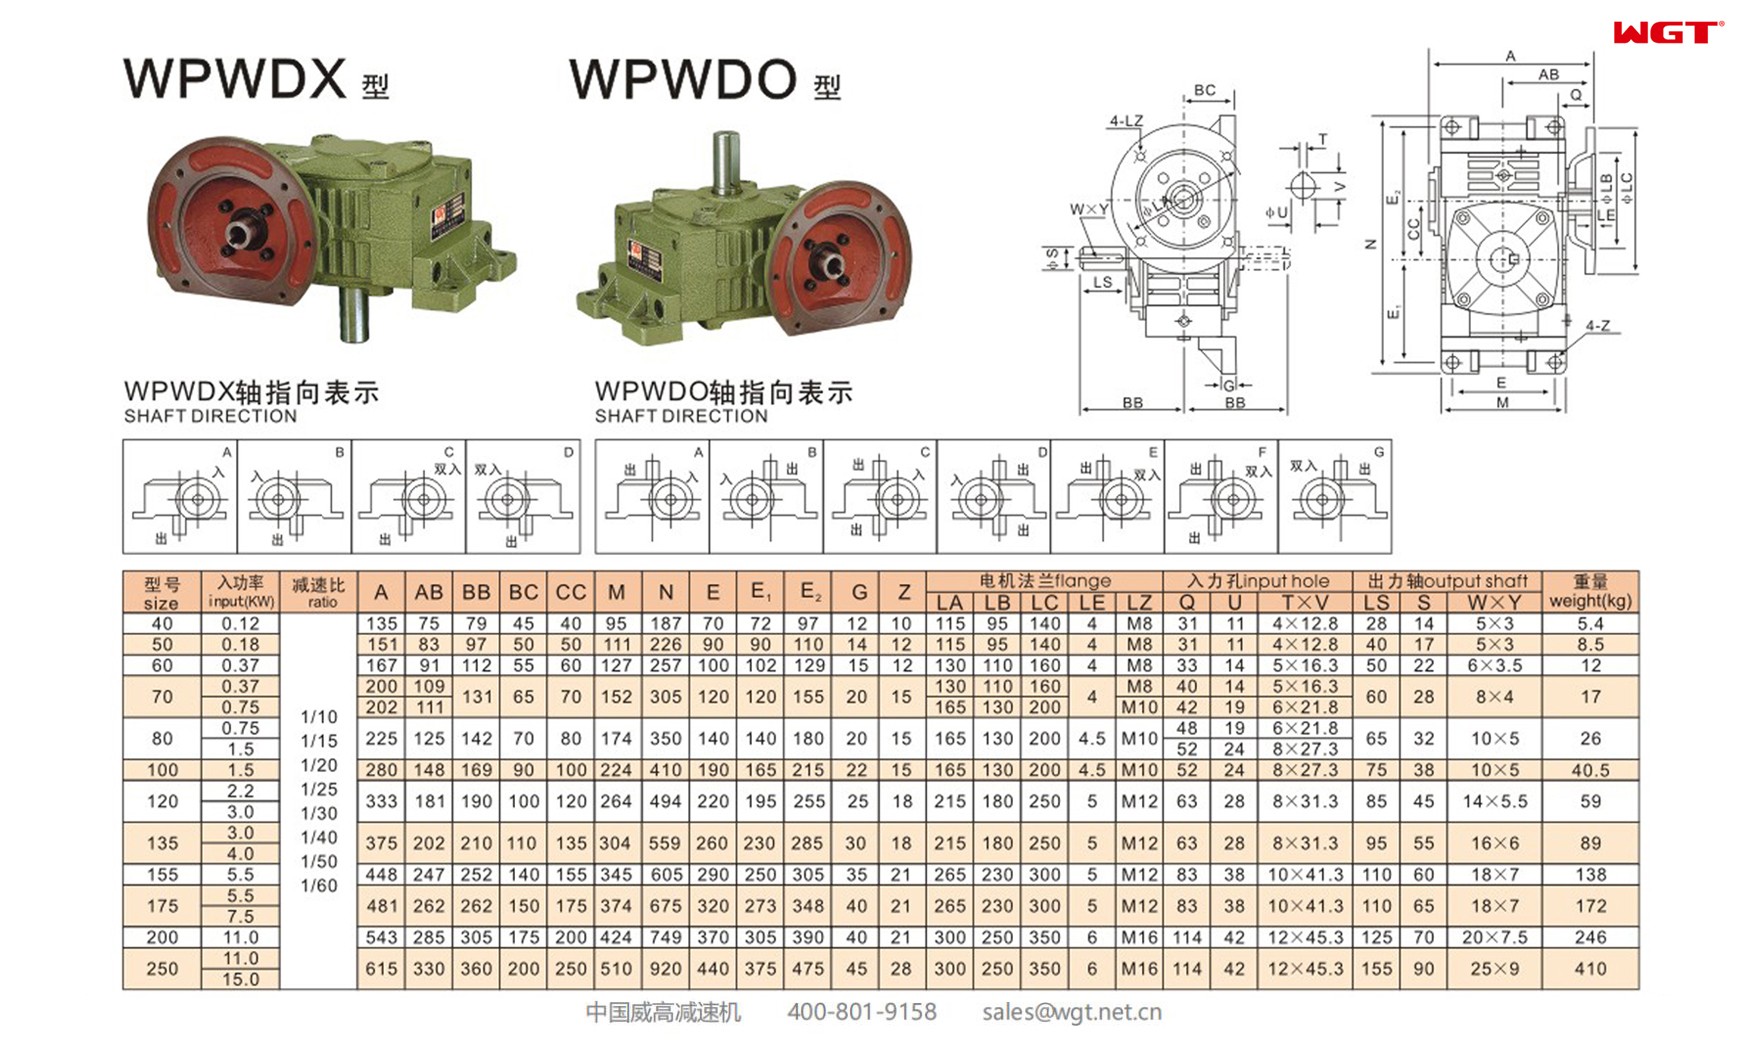 WPWDO135 worm gear reducer universal speed reducer 